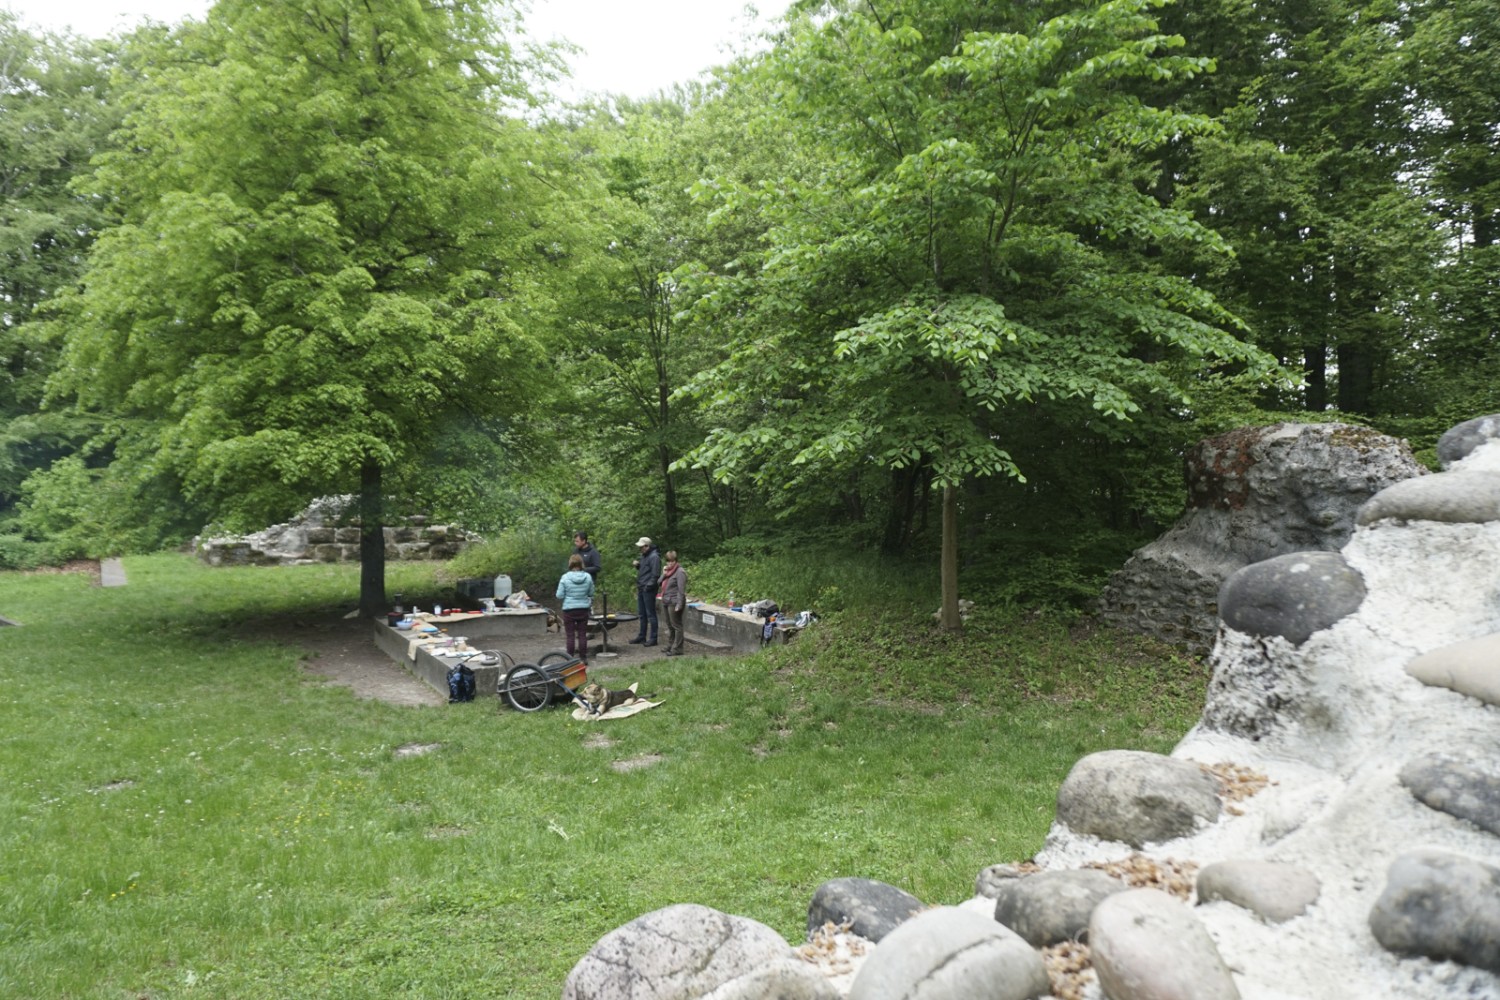 L’area barbecue nei pressi dei ruderi del castello di Grünenberg invita a fare una sosta. Foto: Yolanda Loosli